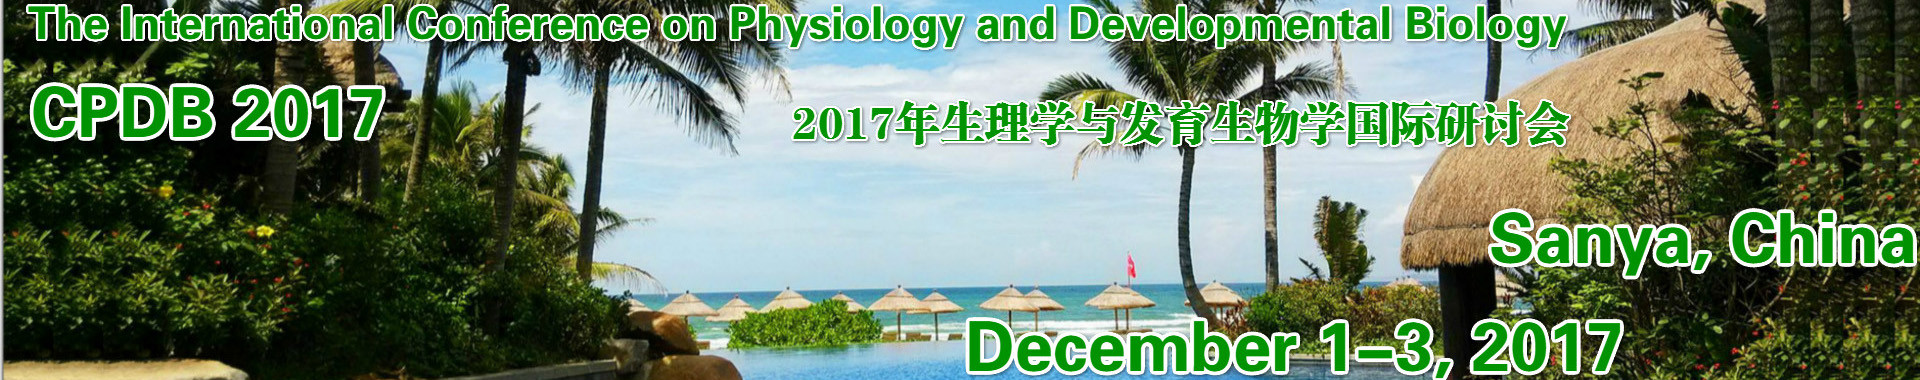 2017年生理学与发育生物学国际研讨会(CPDB 2017)